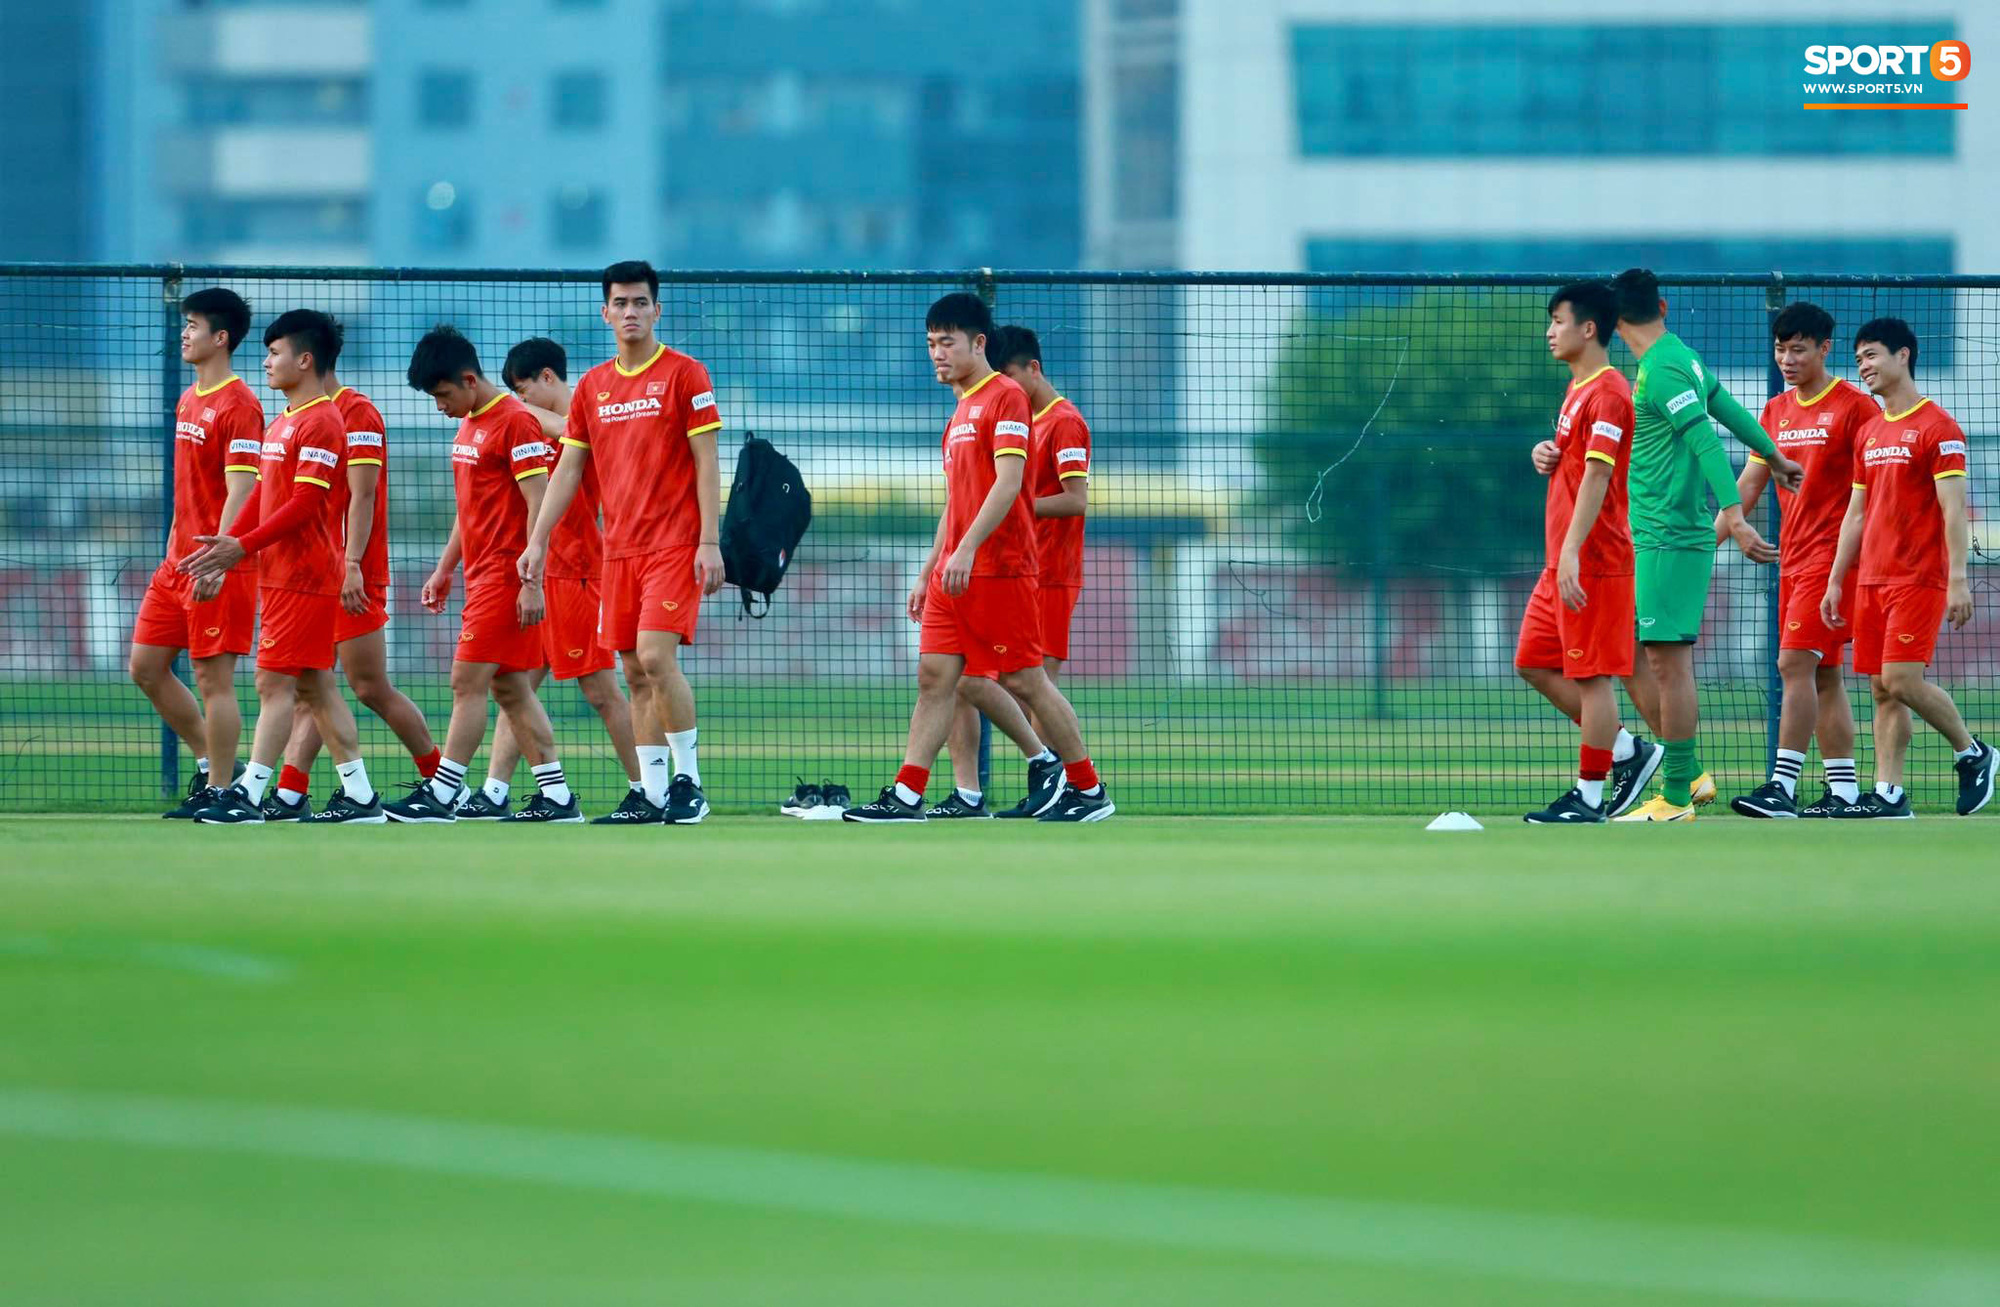 [Trực tiếp từ UAE] Buổi tập đầu tiên của tuyển Việt Nam sau trận gặp Indonesia: Tuấn Anh, Văn Toàn cùng có mặt - Ảnh 5.